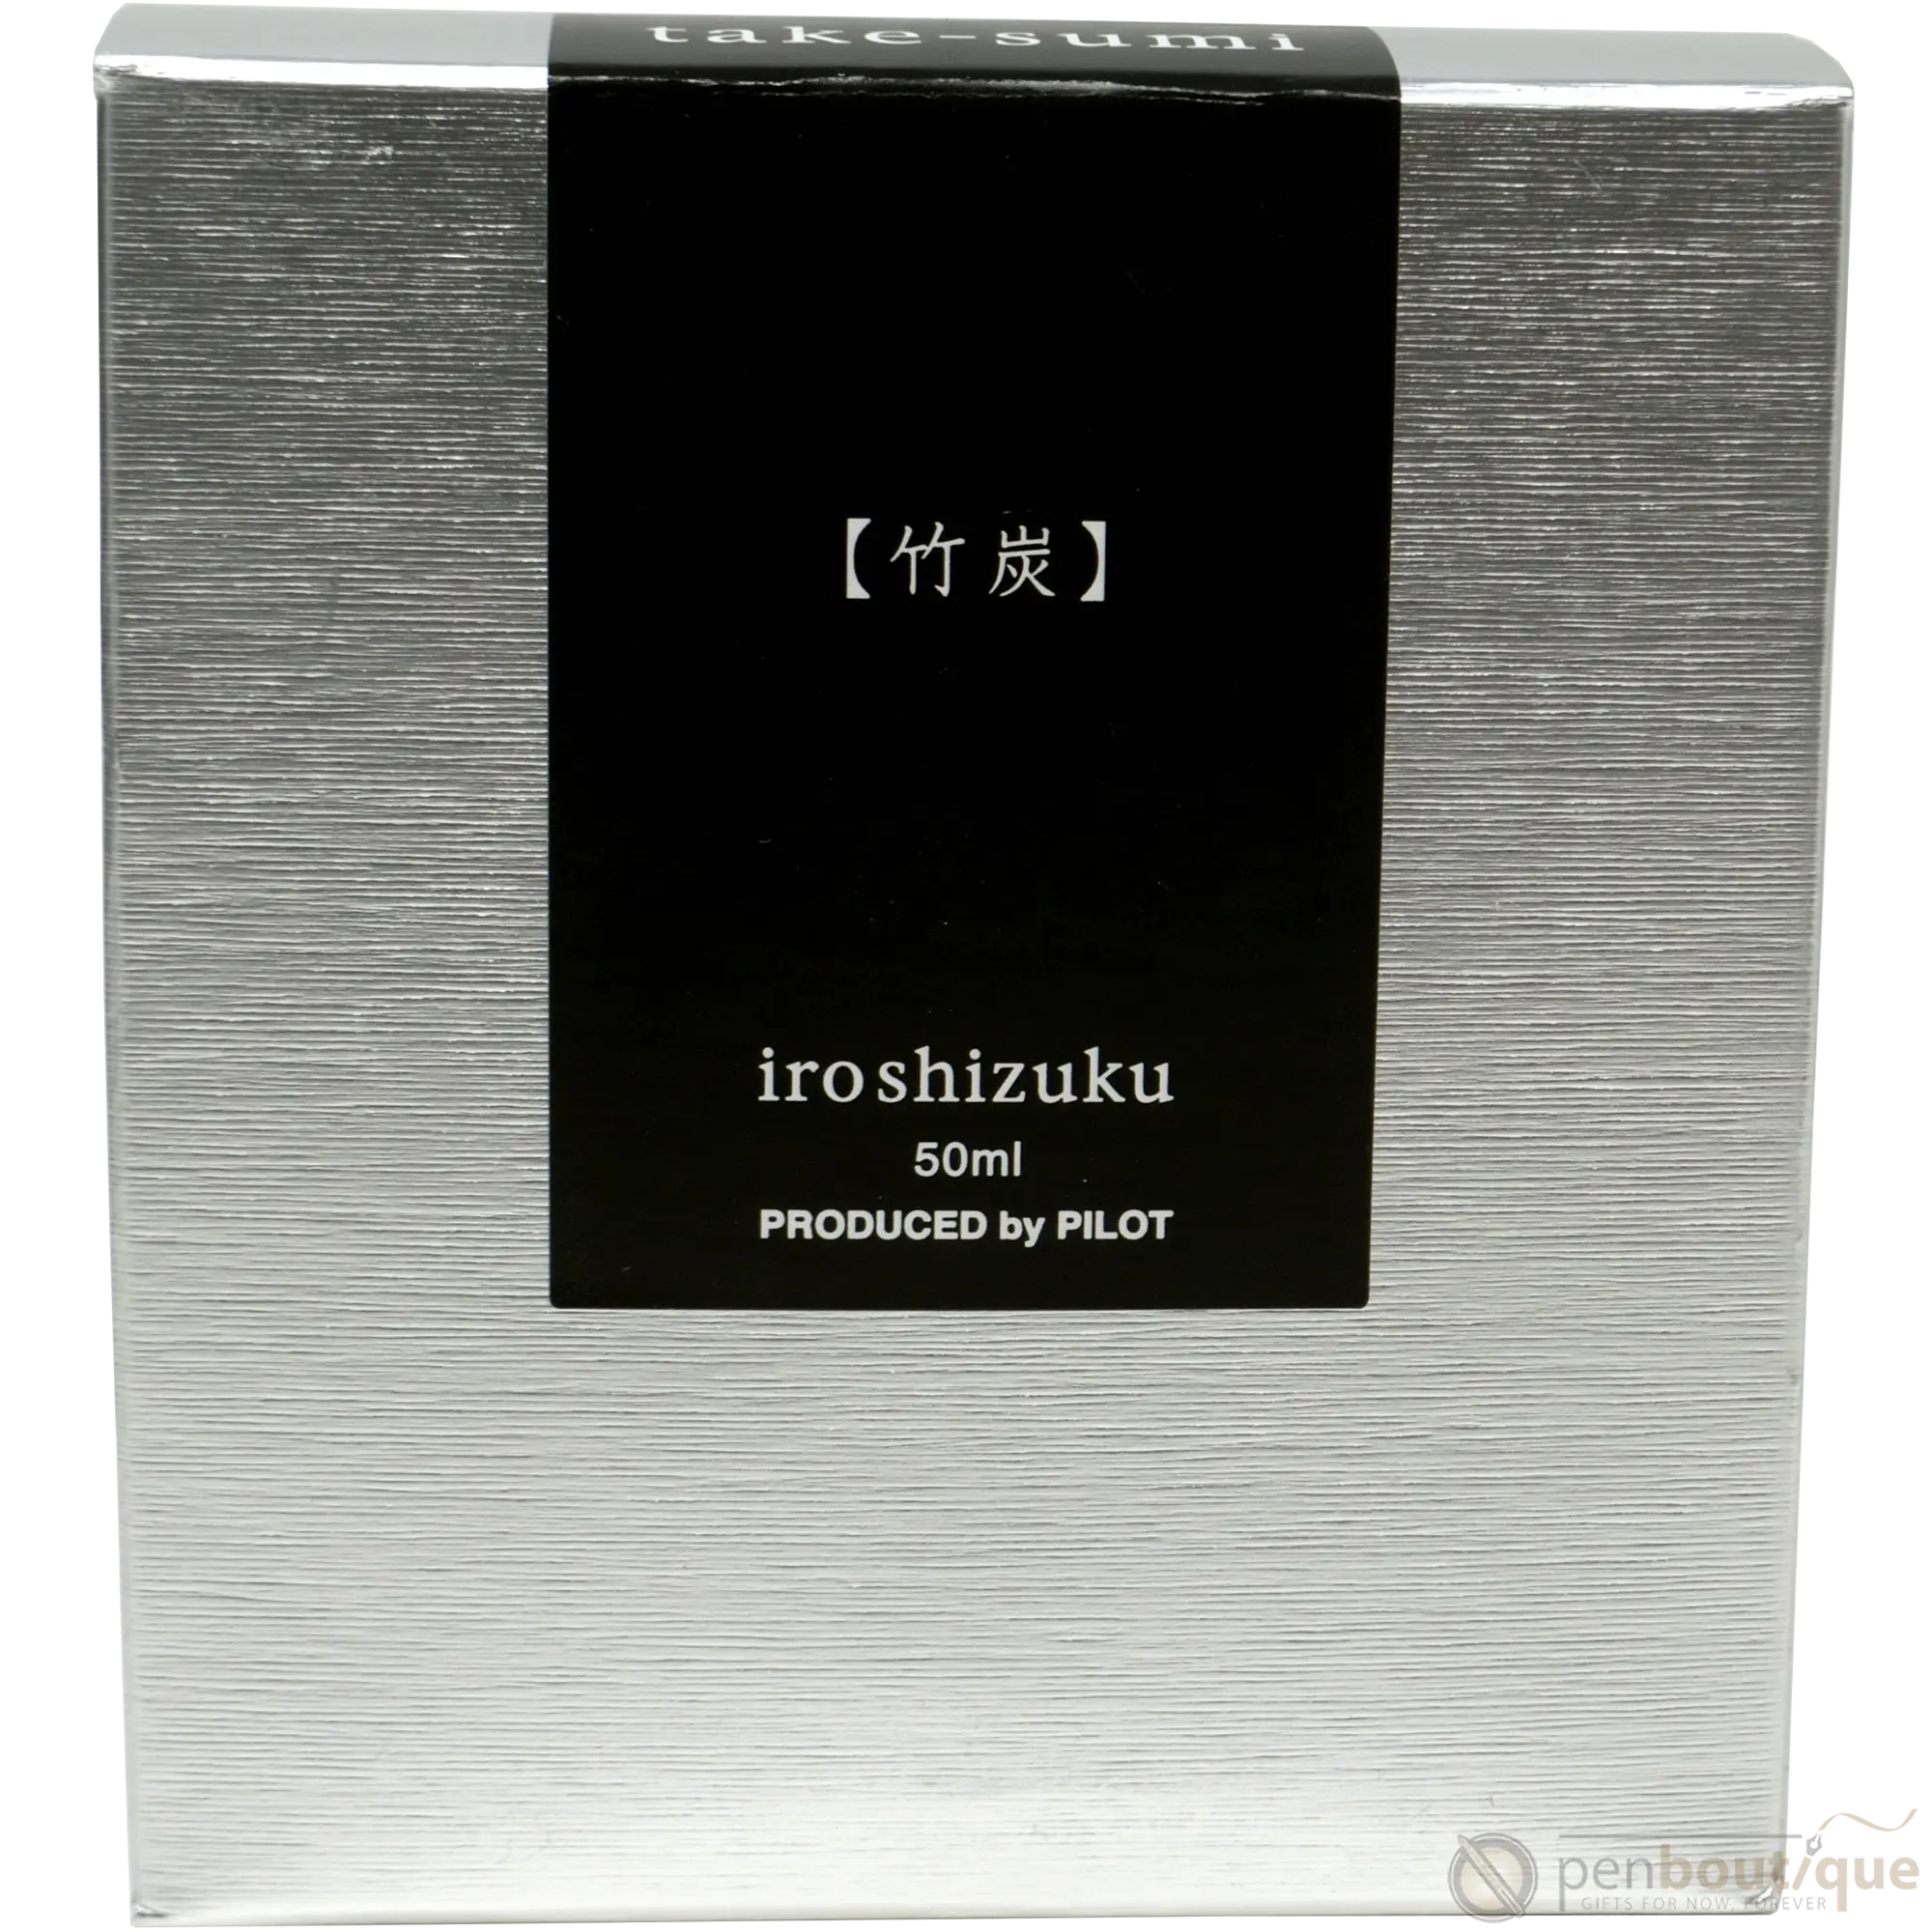 Pilot Iroshizuku Fountain Pen Ink Bottle - Bamboo Charcoal (Take-sumi)-Pen Boutique Ltd